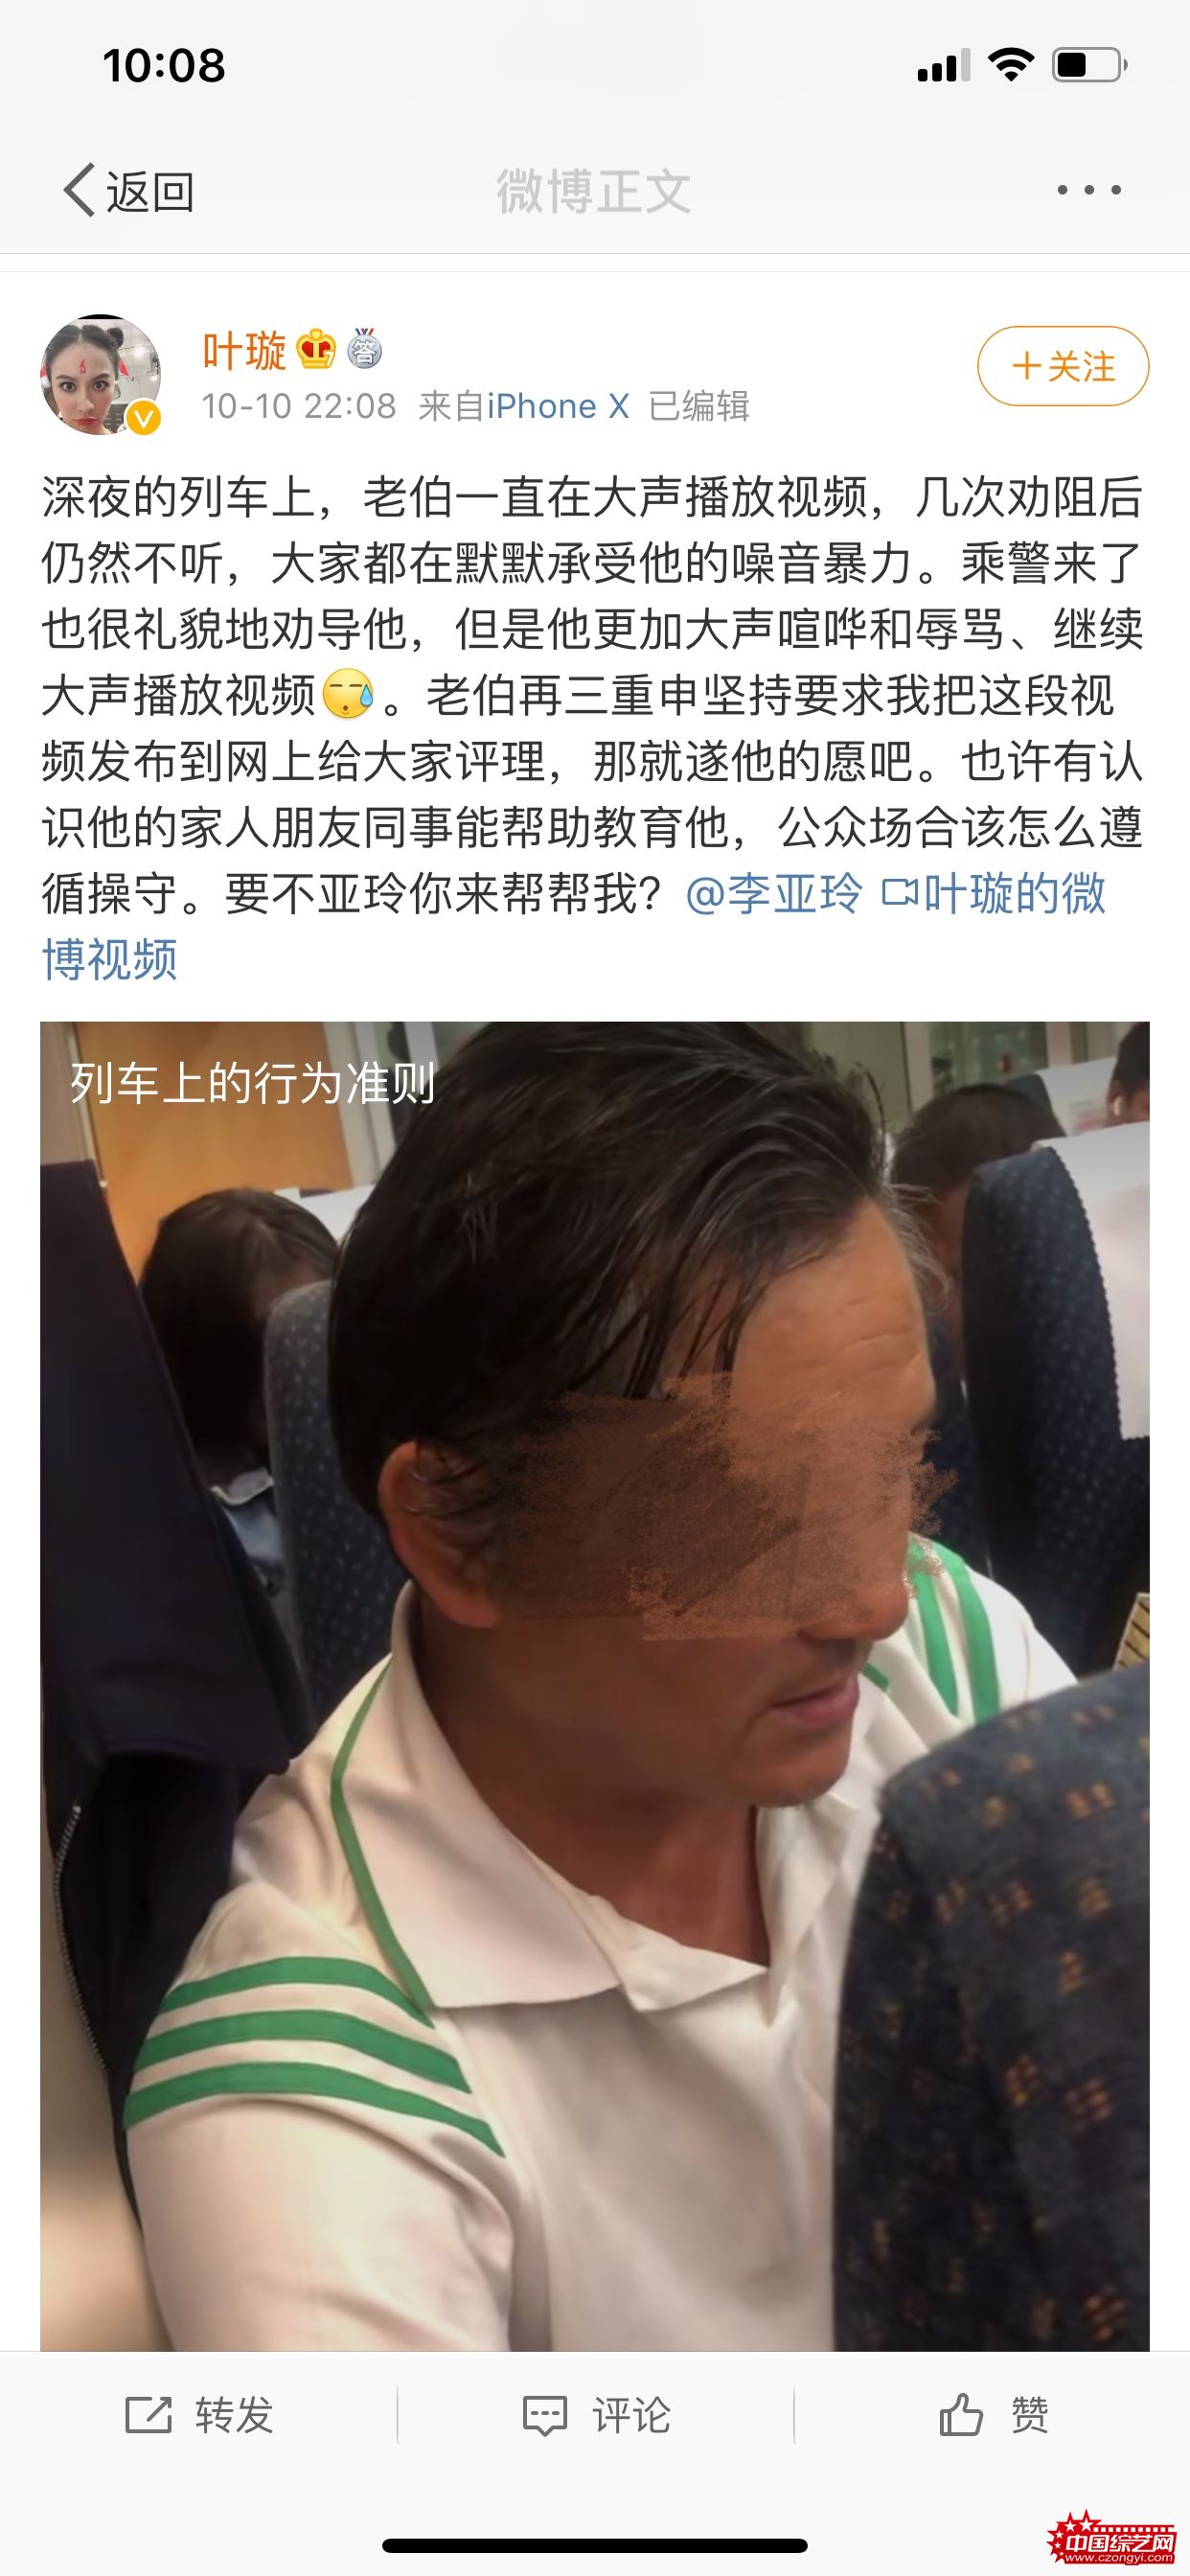 叶璇高铁阻止“外放族”被怼 12306称将加强工作